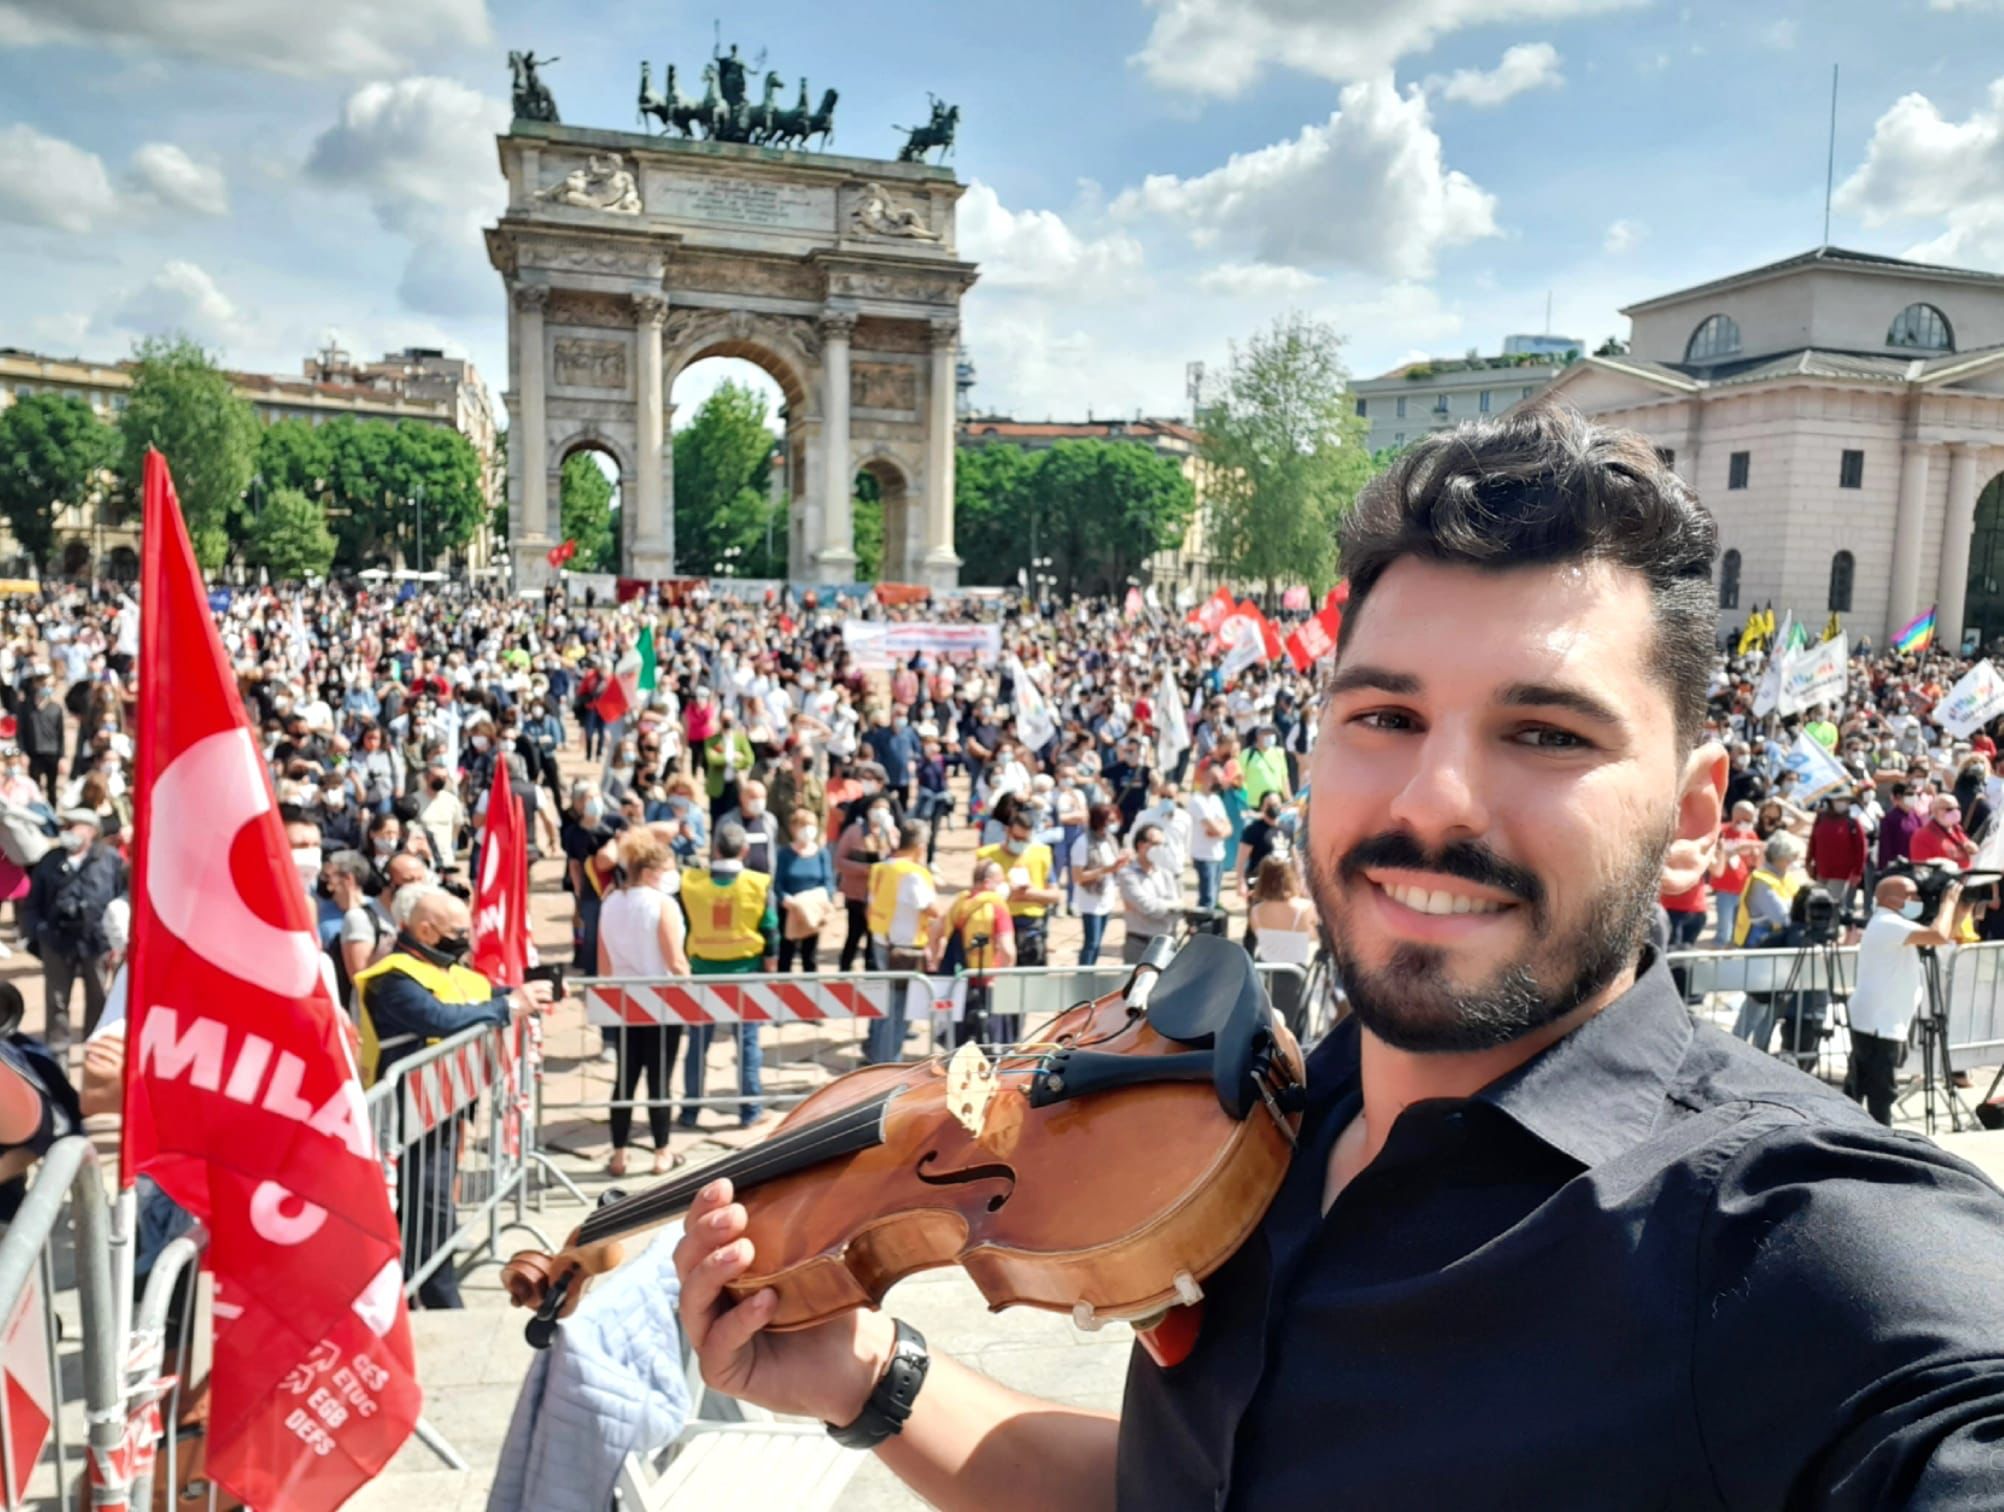 Milano: Il musicista lancianese Gennaro Spinelli apre la manifestazione per il DDL ZAN insieme con Malika Ayane e il senatore Zan